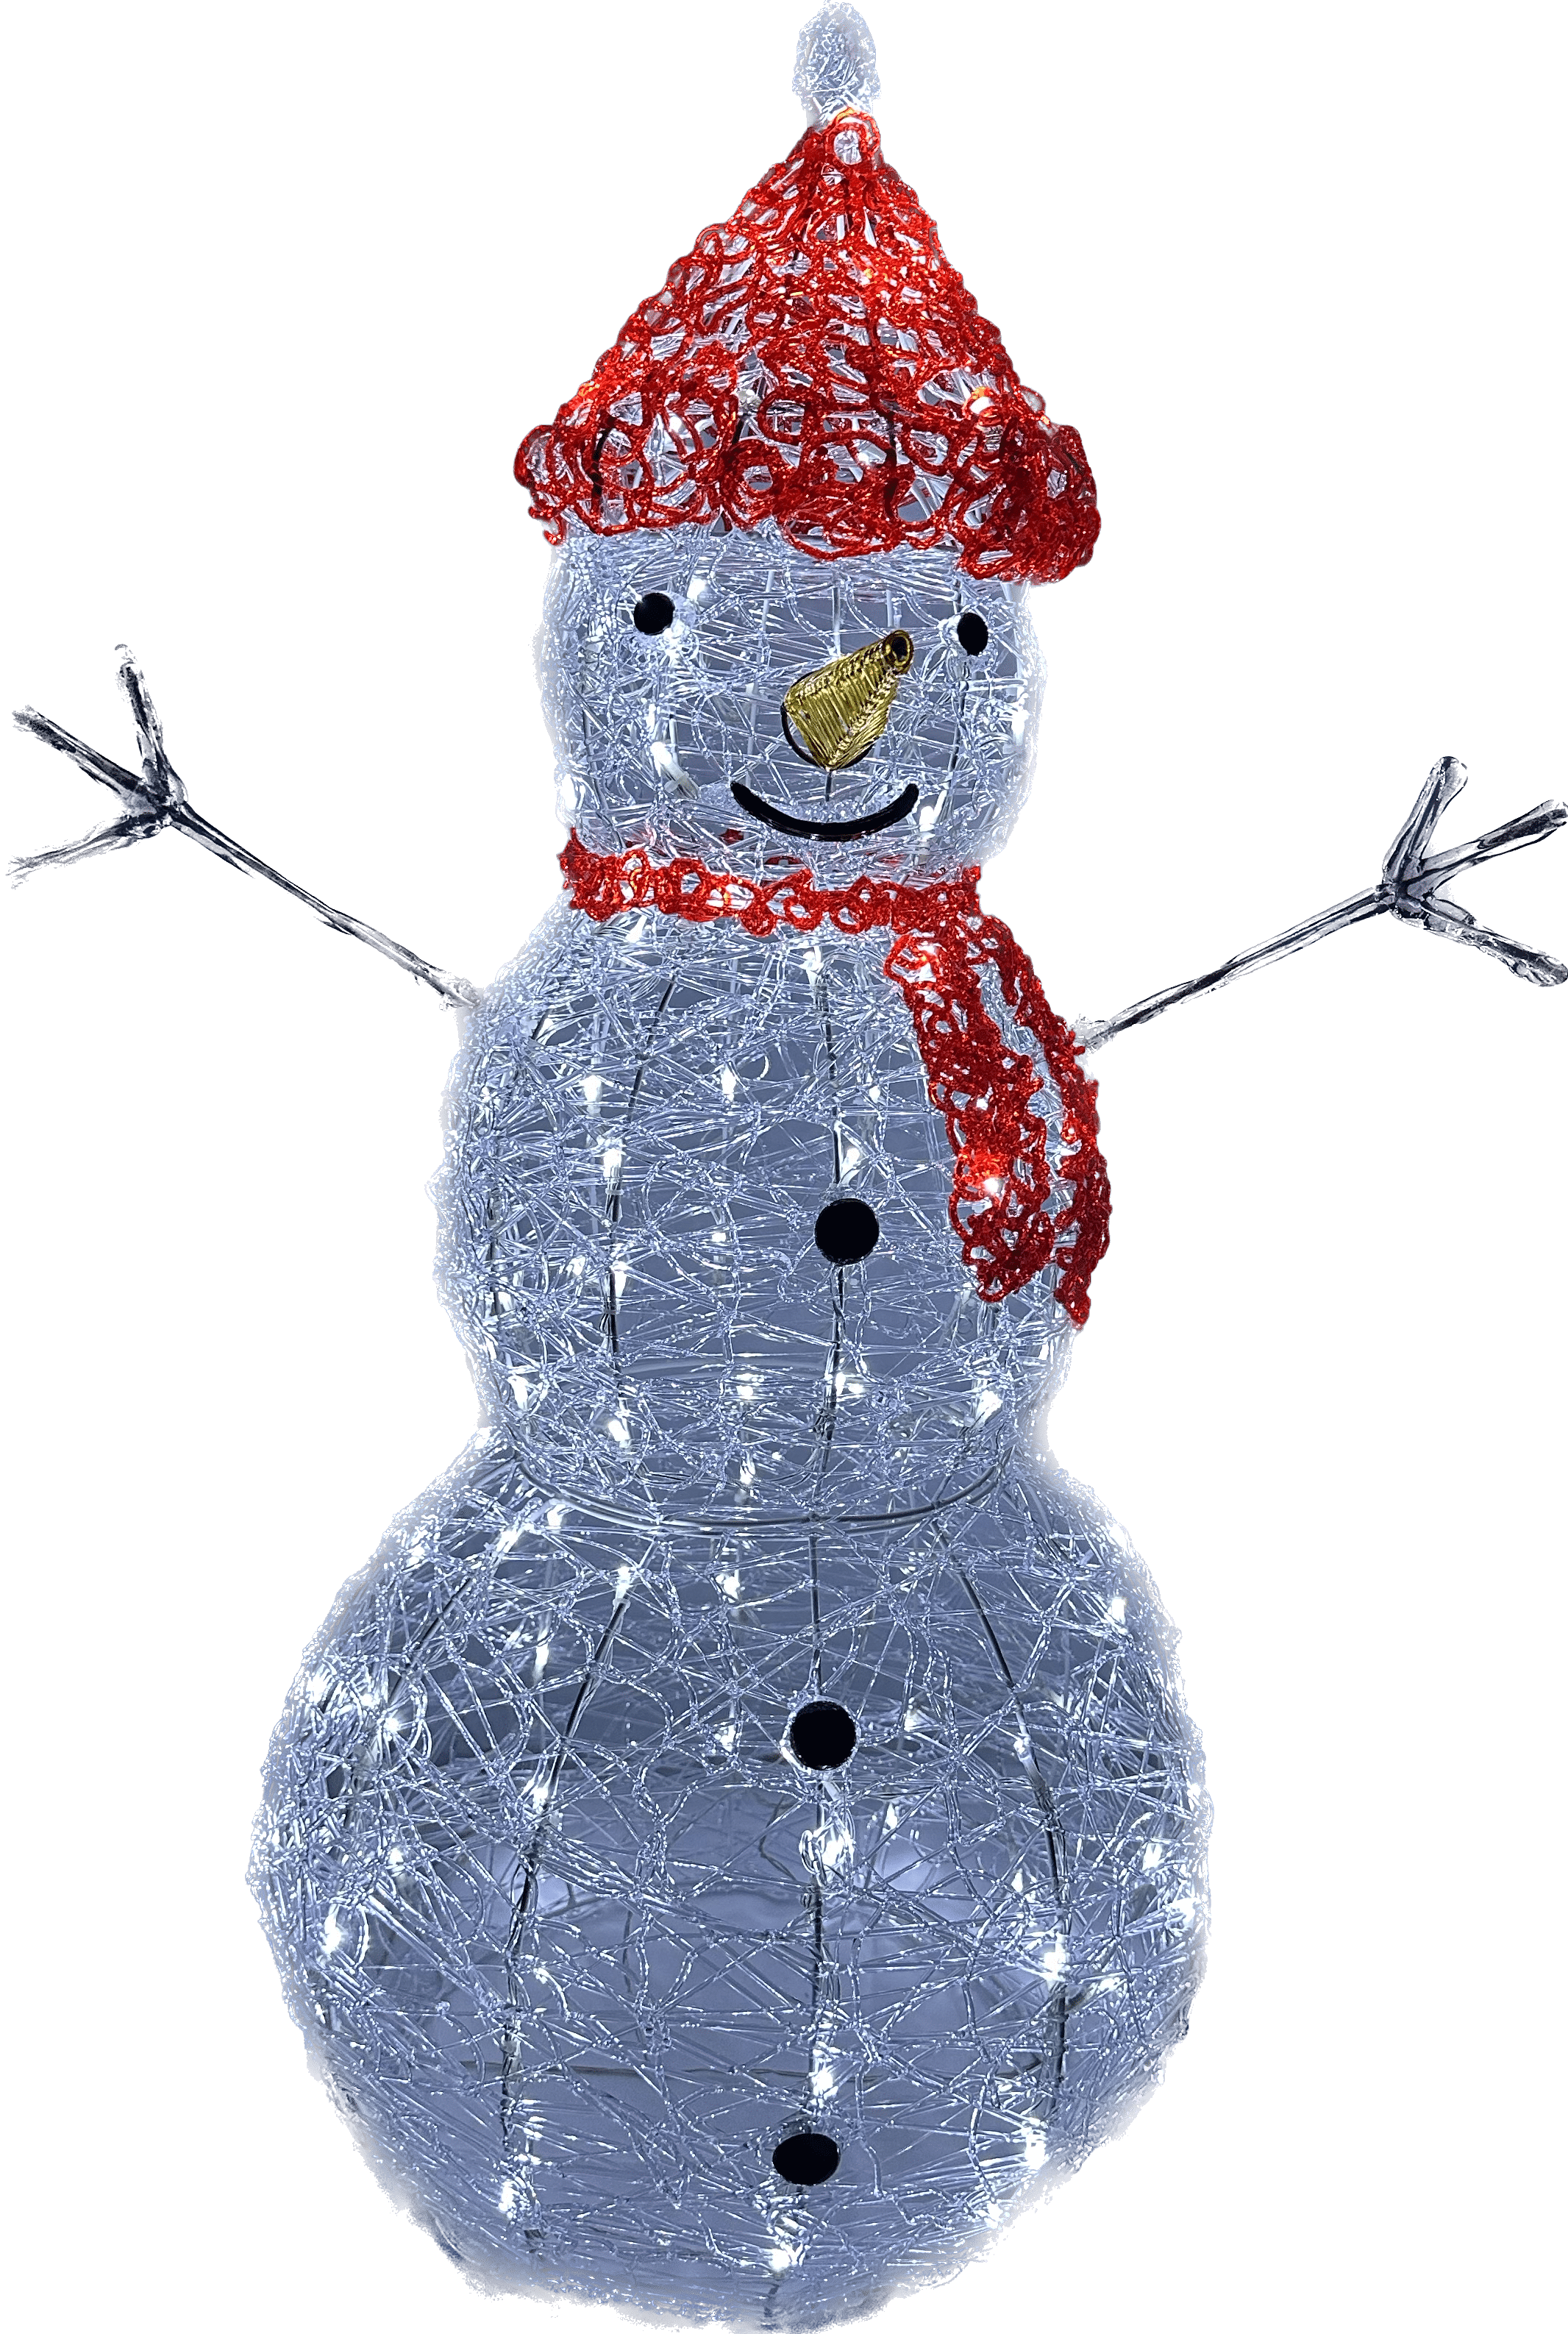 http://kerstshop-desmedt.be/cdn/shop/files/kerstdecoratie-de-smedt-outdoor-verlichte-sneeuwman-groot-51804285370710.png?v=1695929852